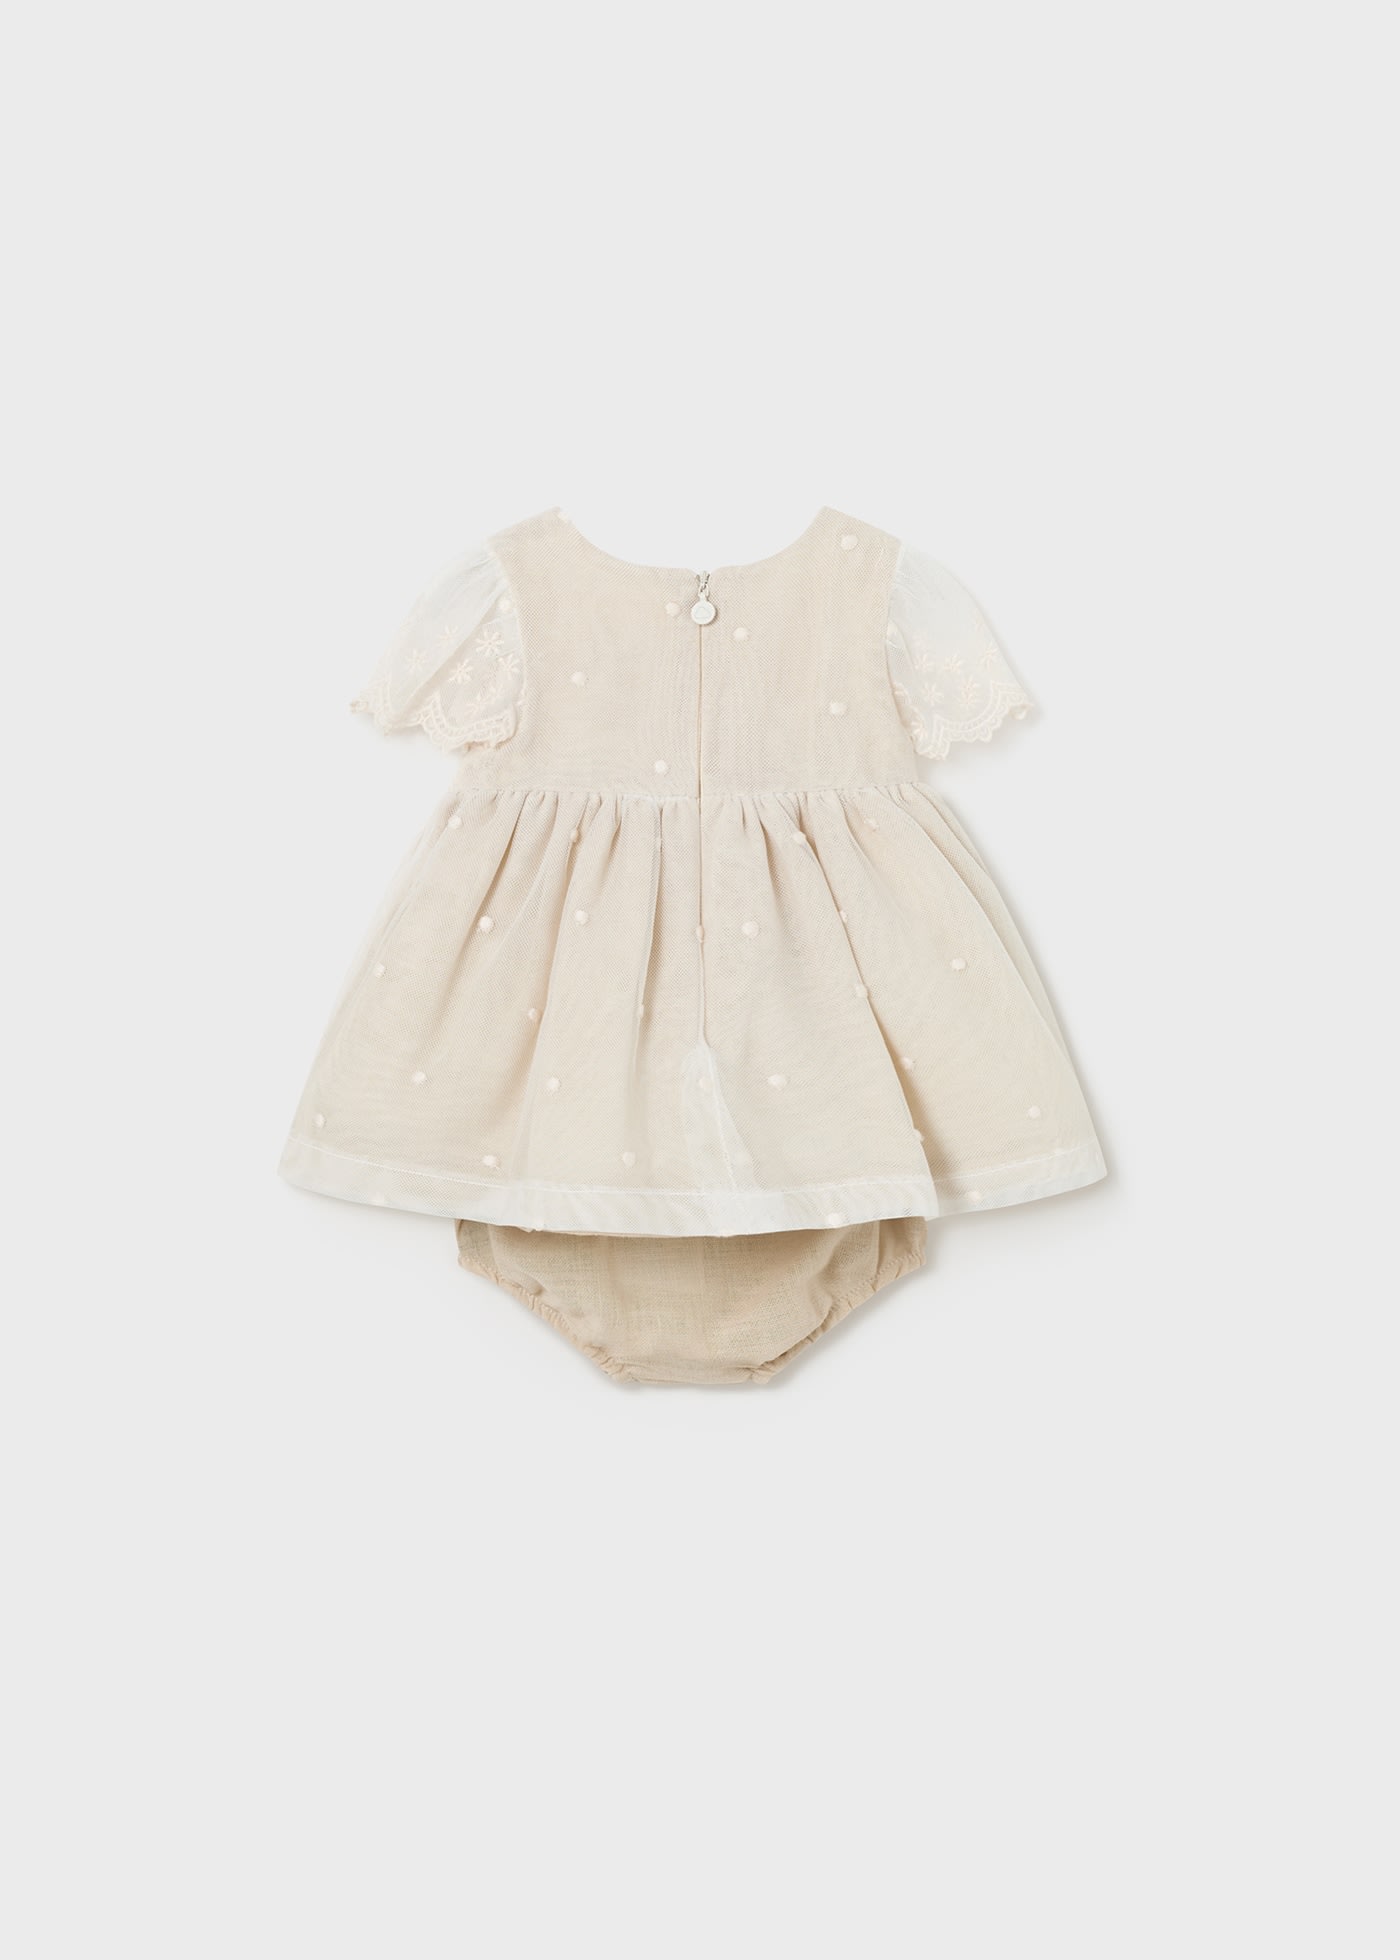 Φόρεμα τούλι κεντητό με κάλυμμα για πάνα νεογέννητο